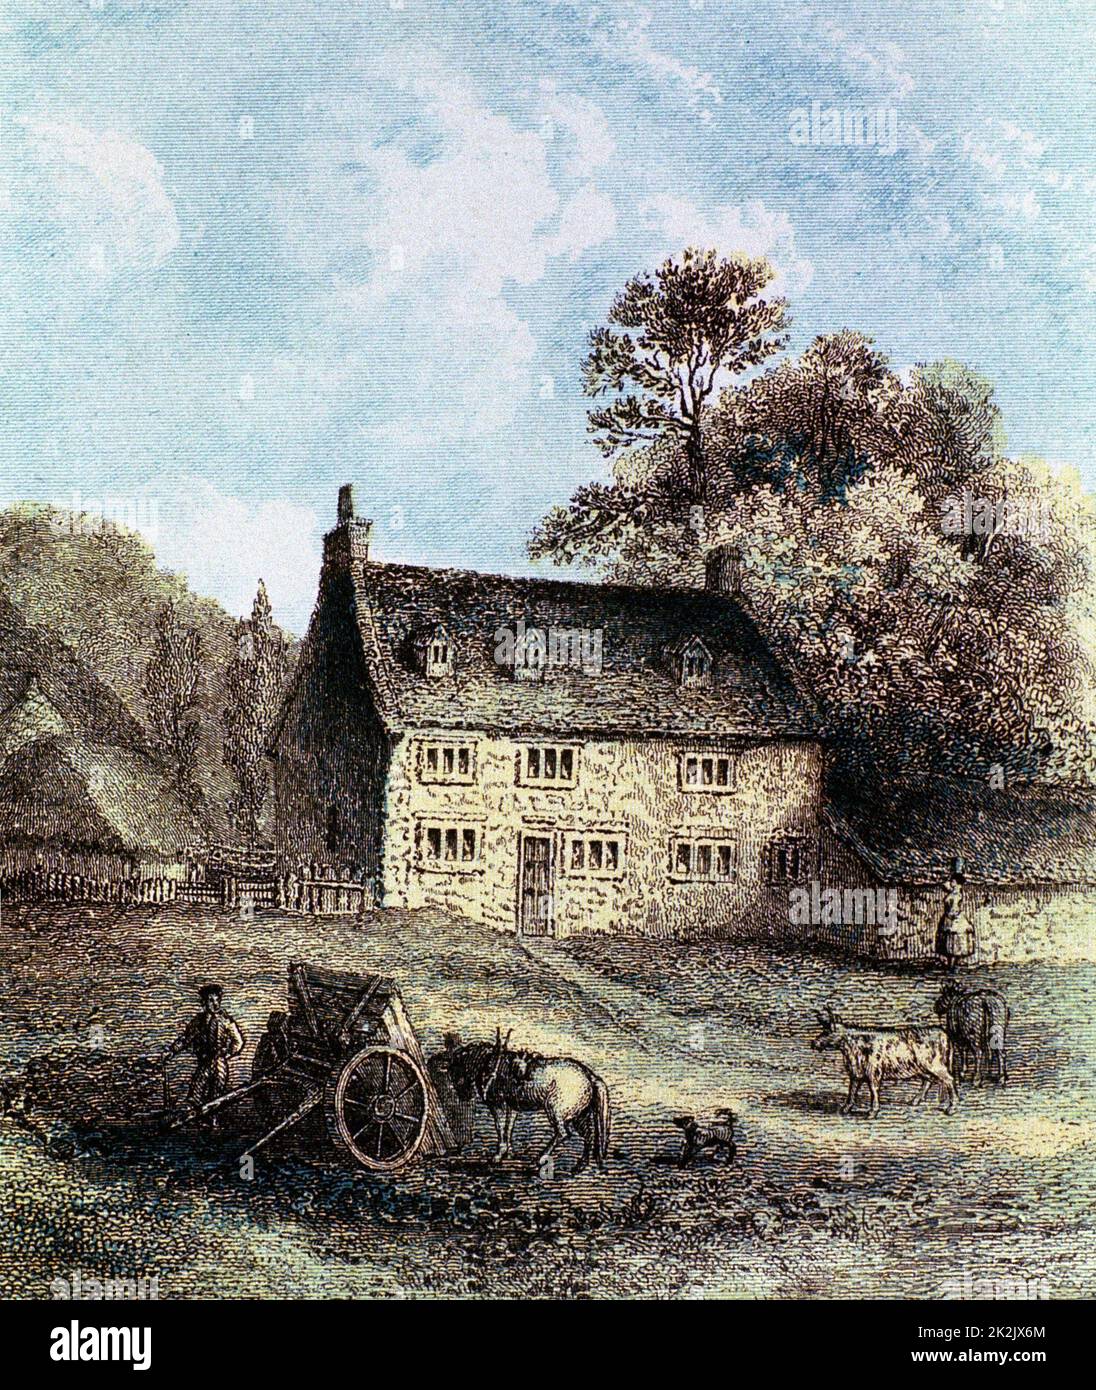 Isaac Newton (1642-1727) englischer Wissenschaftler und Mathematiker. Woolsthorpe Manor in der Nähe von Grantham, Lincolnshire, Newtons Geburtsort. Farbiger Stich 1859 Stockfoto